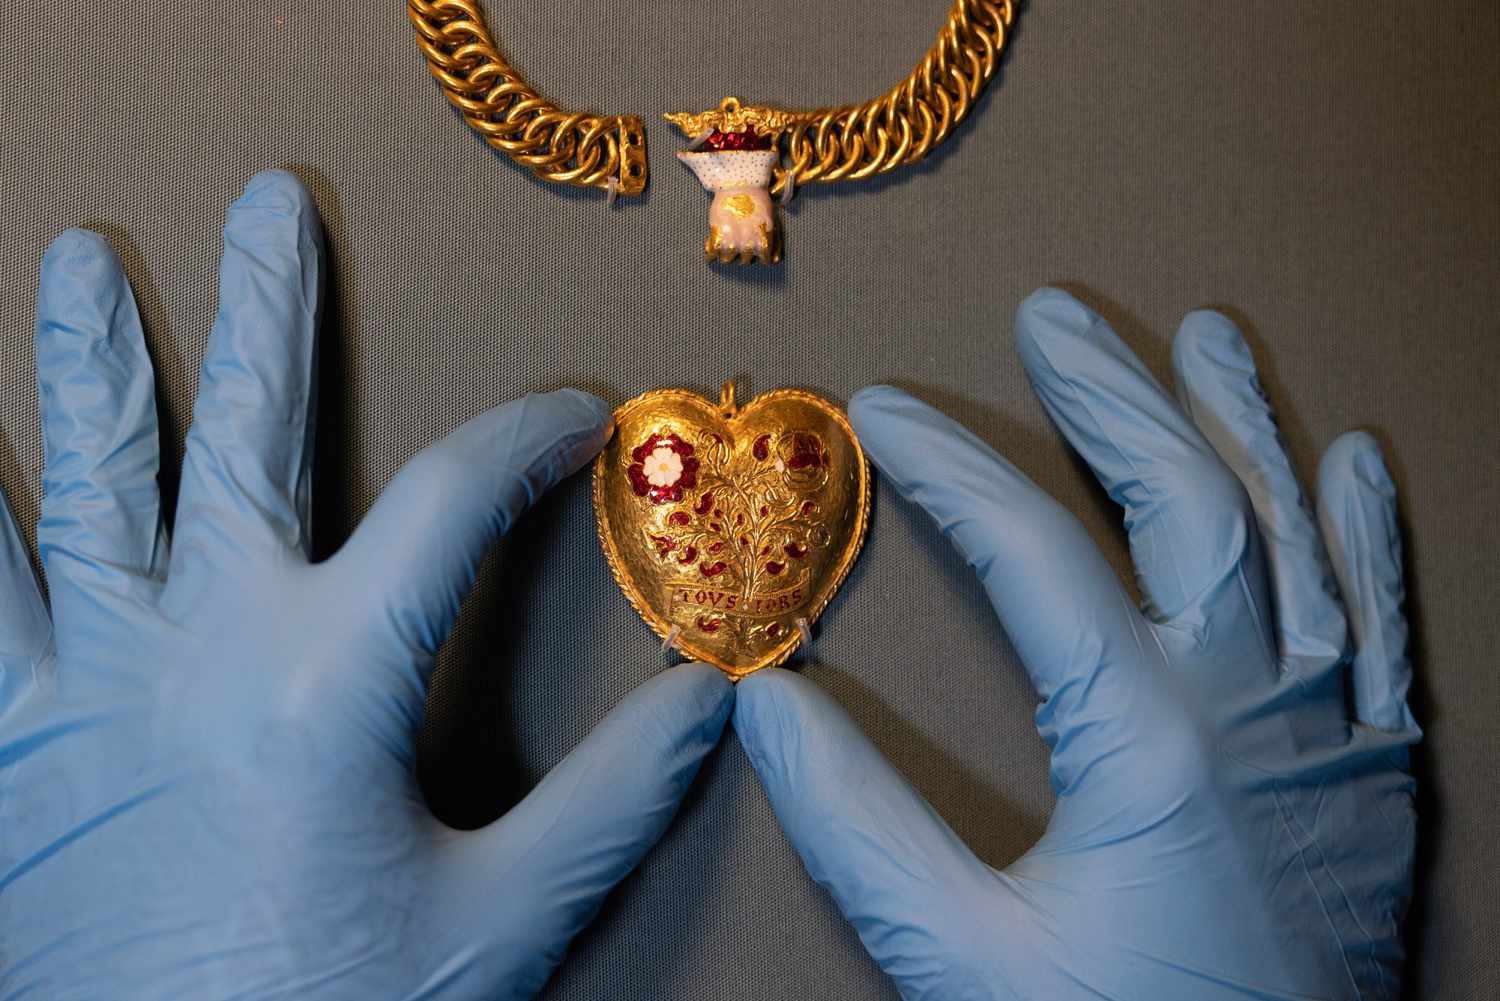 Владелец кафе обнаружил кулон в форме сердца, связанный с королем Генрихом VIII в поле: «Находка раз в поколение»